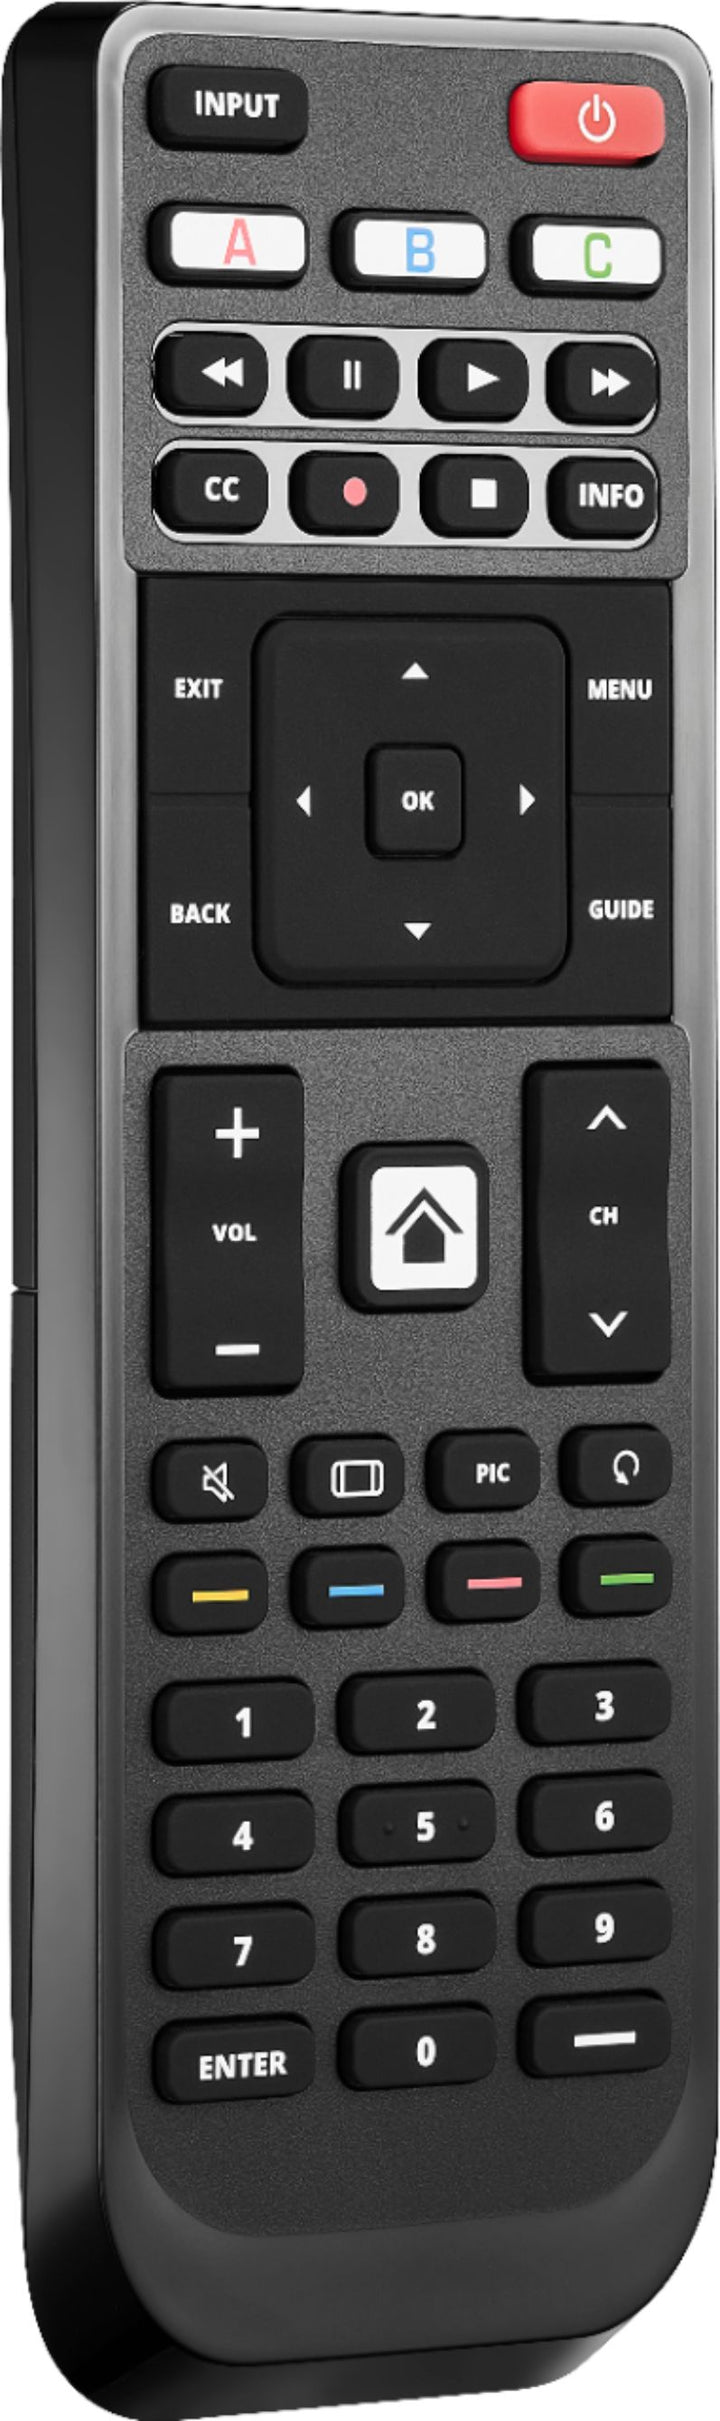 Insignia™ - Replacement Remote for Vizio TVs - Black_3